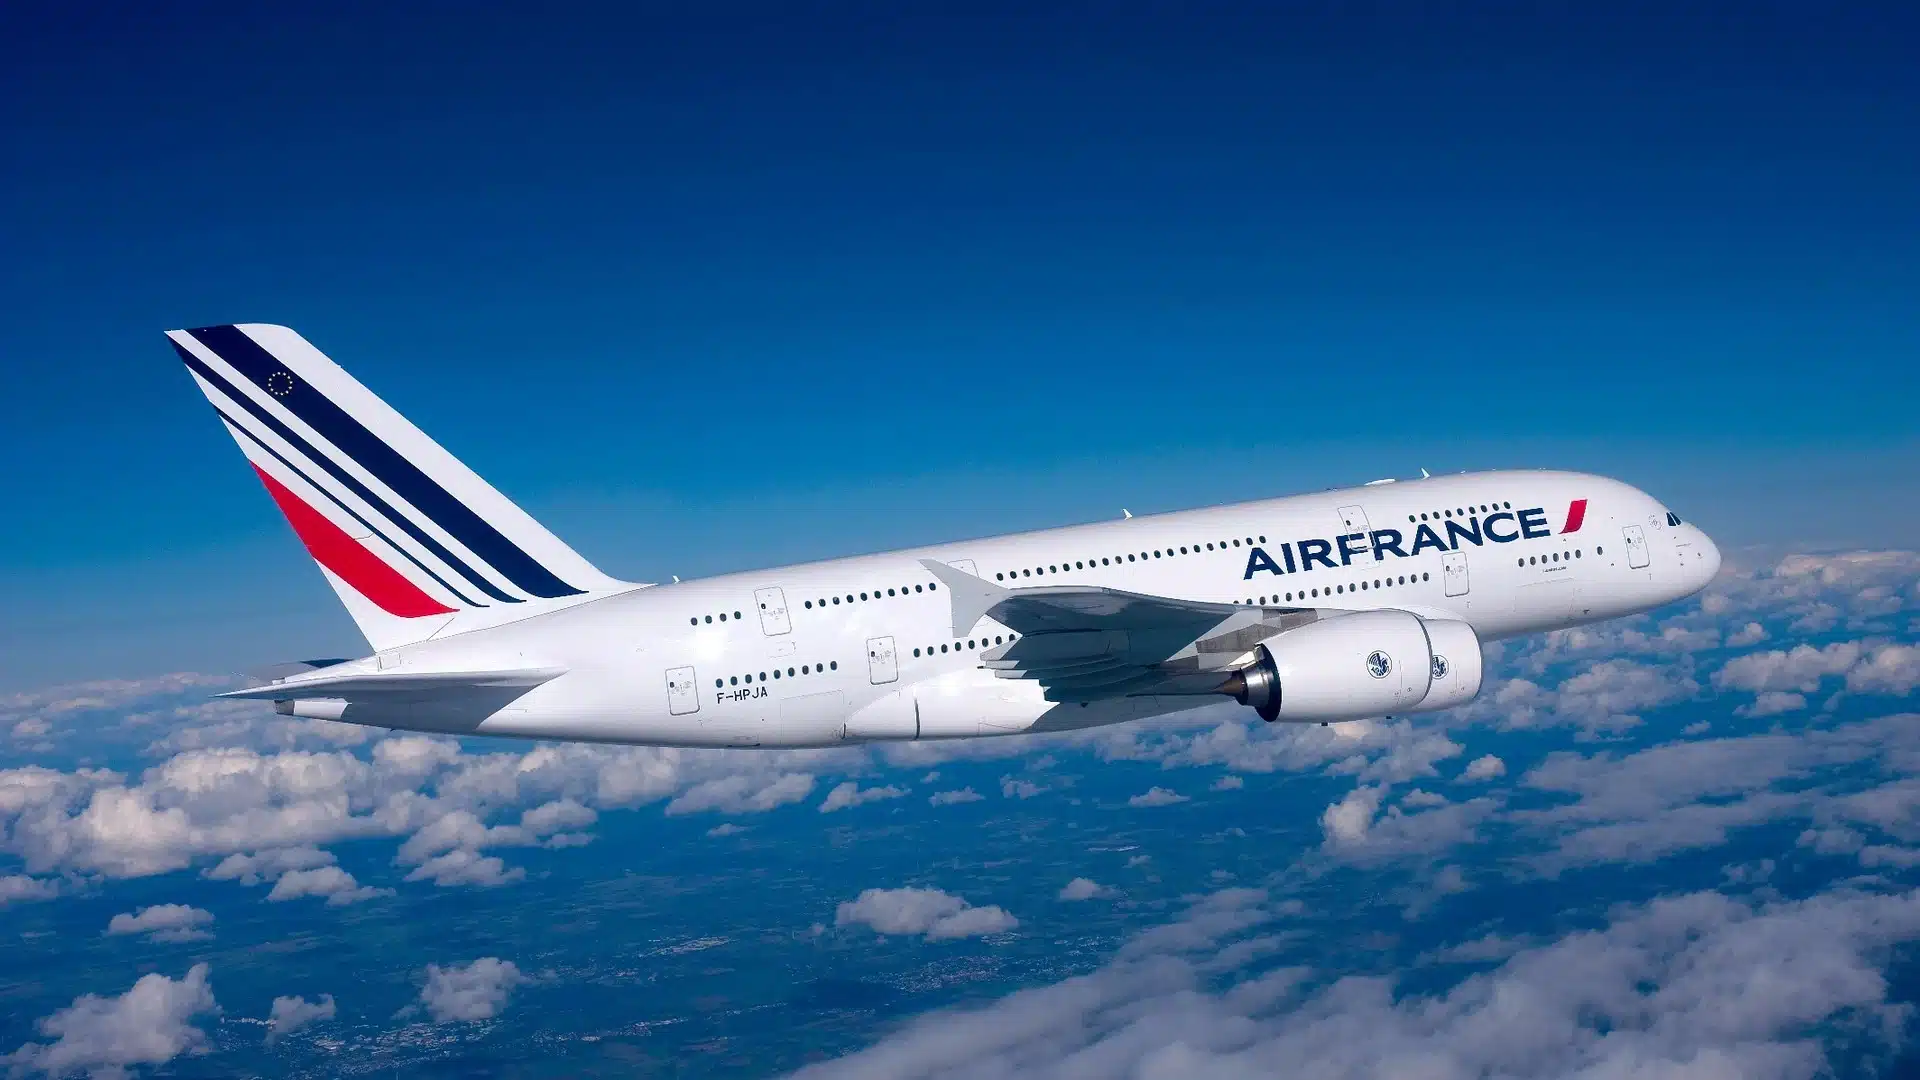 França proíbe voos de curta duração para reduzir emissão de carbono